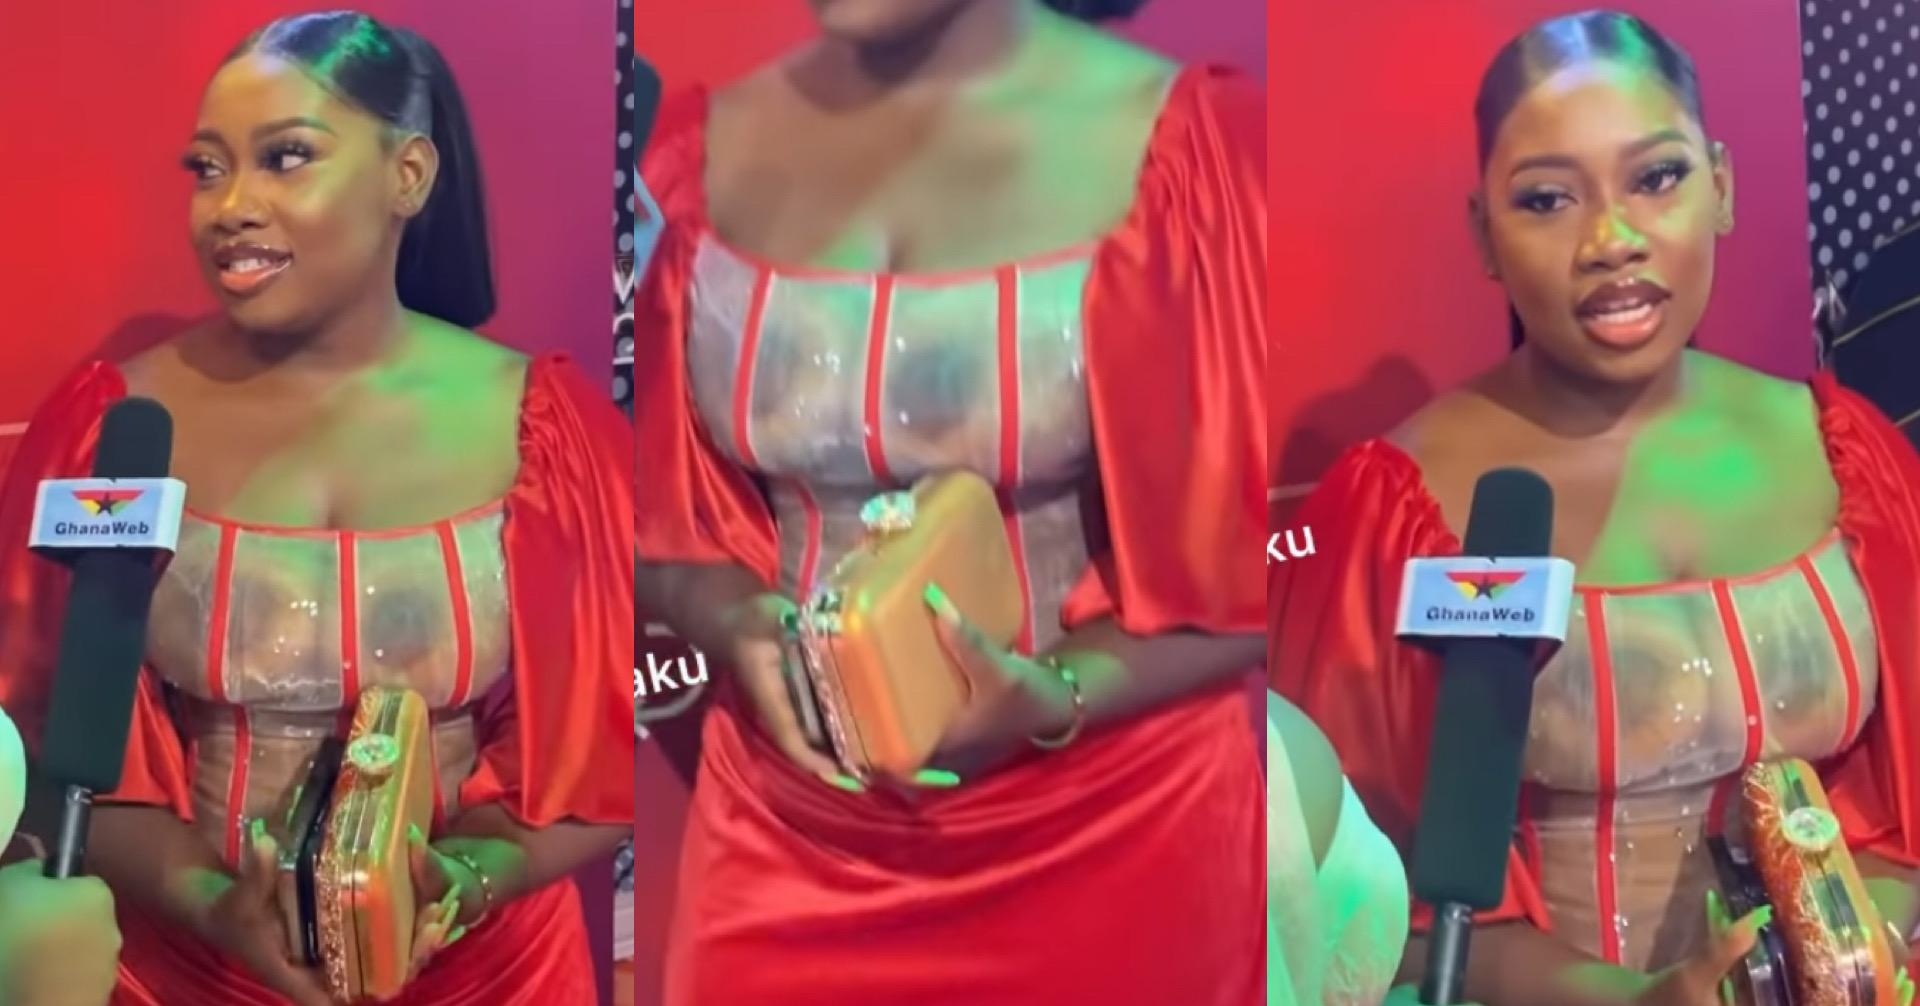 Hot Video Of Shugatiti Dress Half-Naked At Vgma [WATCH]